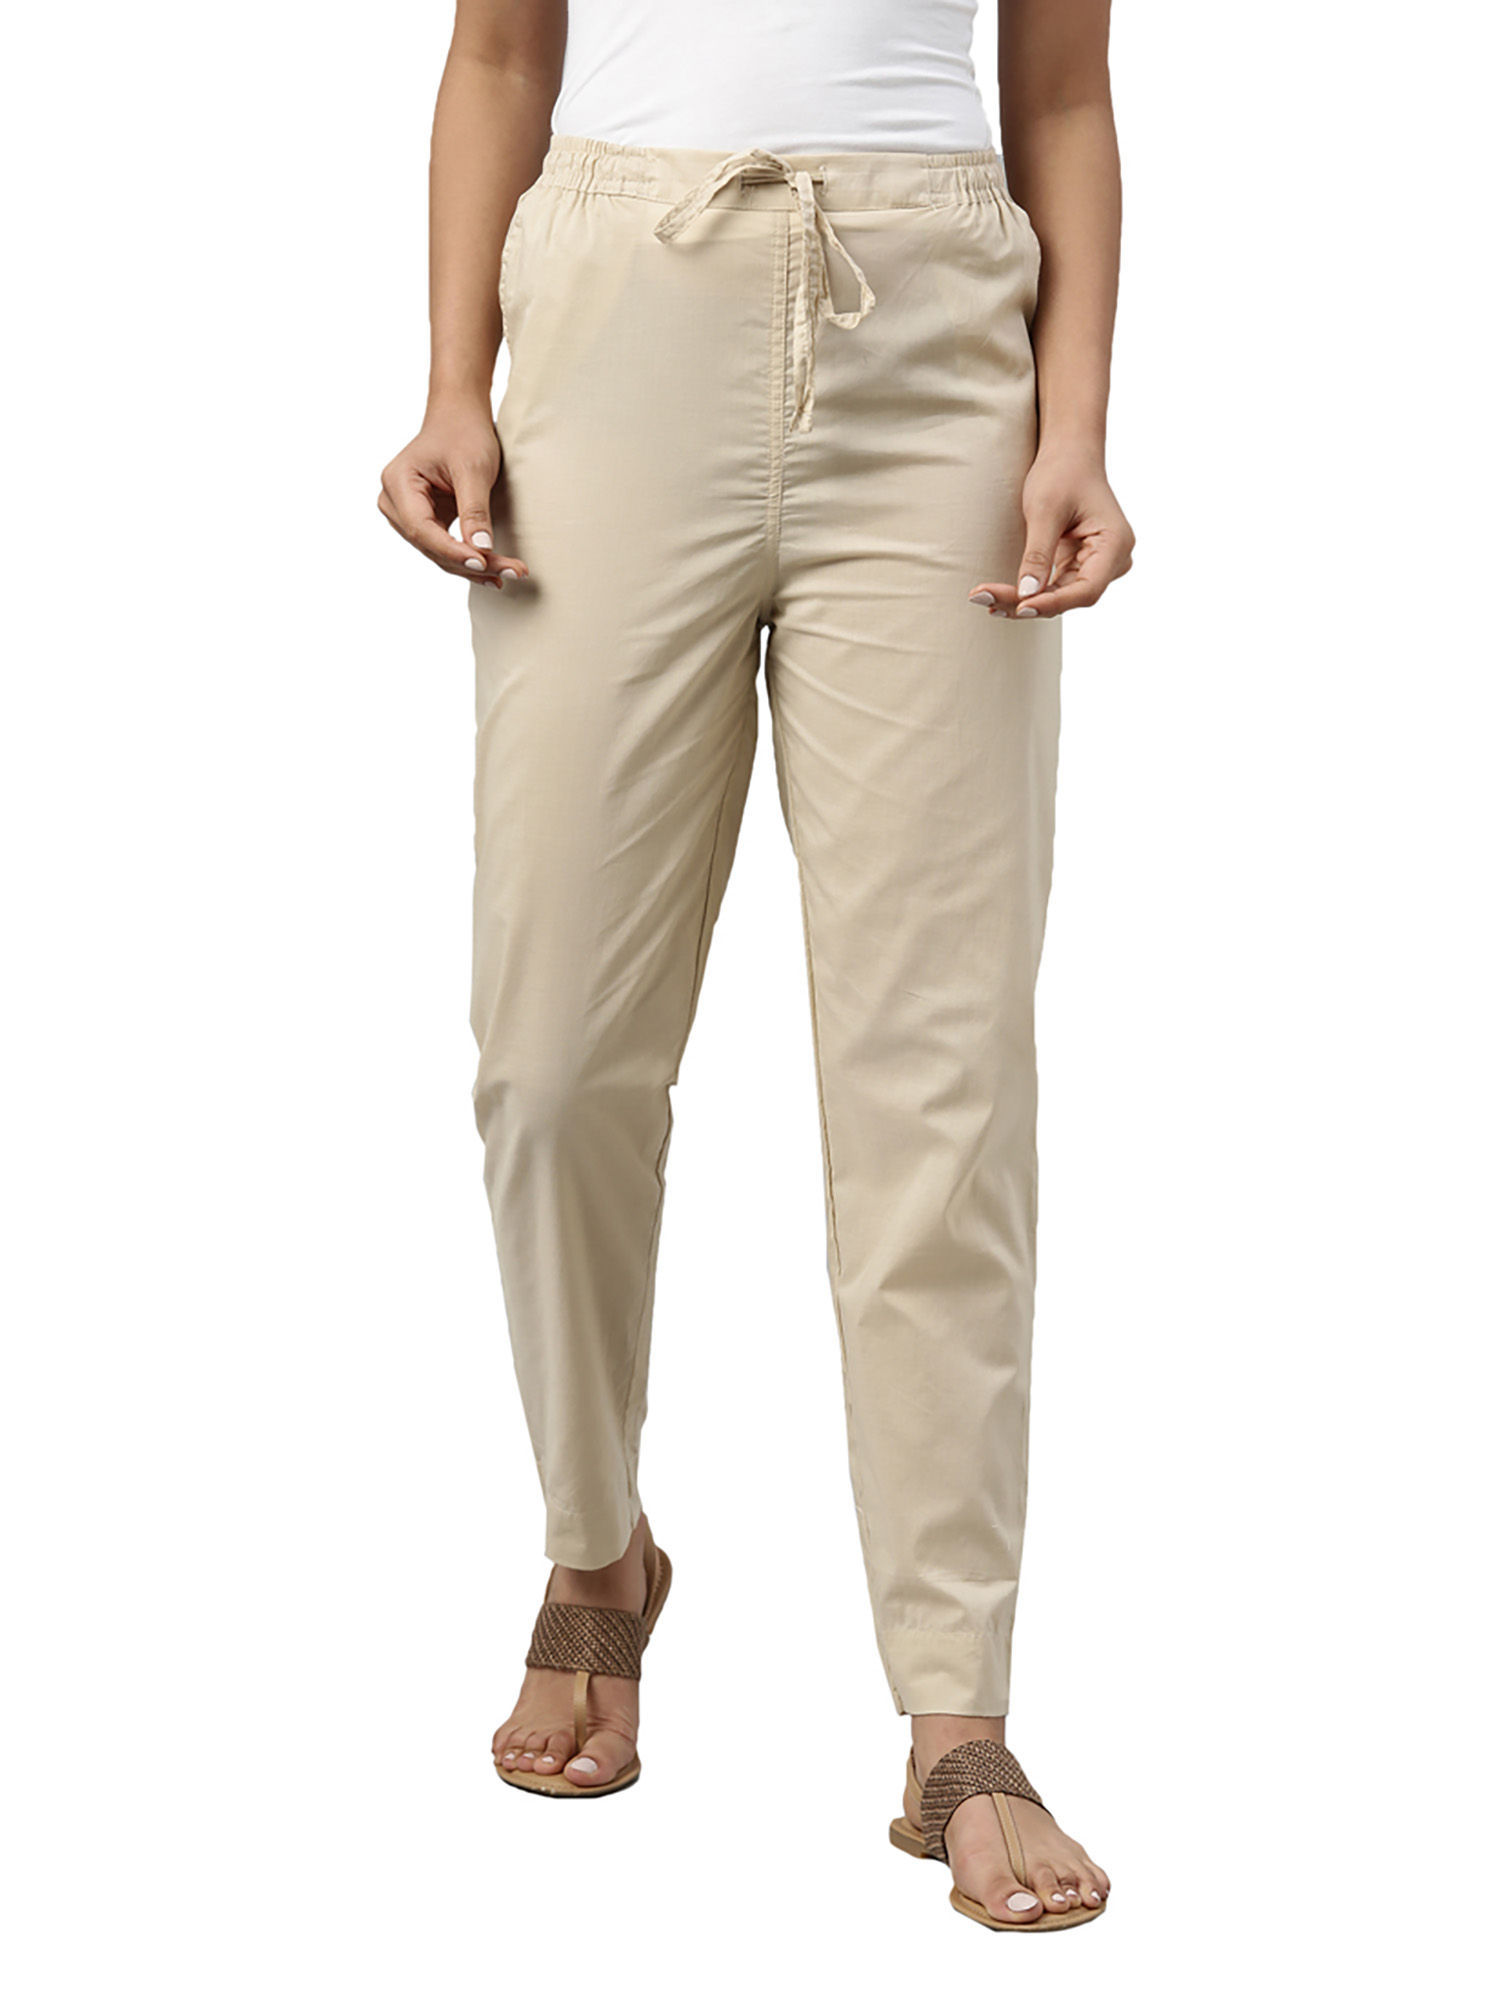 Buy Go Colors Women Medium Beige Solid Mid Rise Metallic Pants online